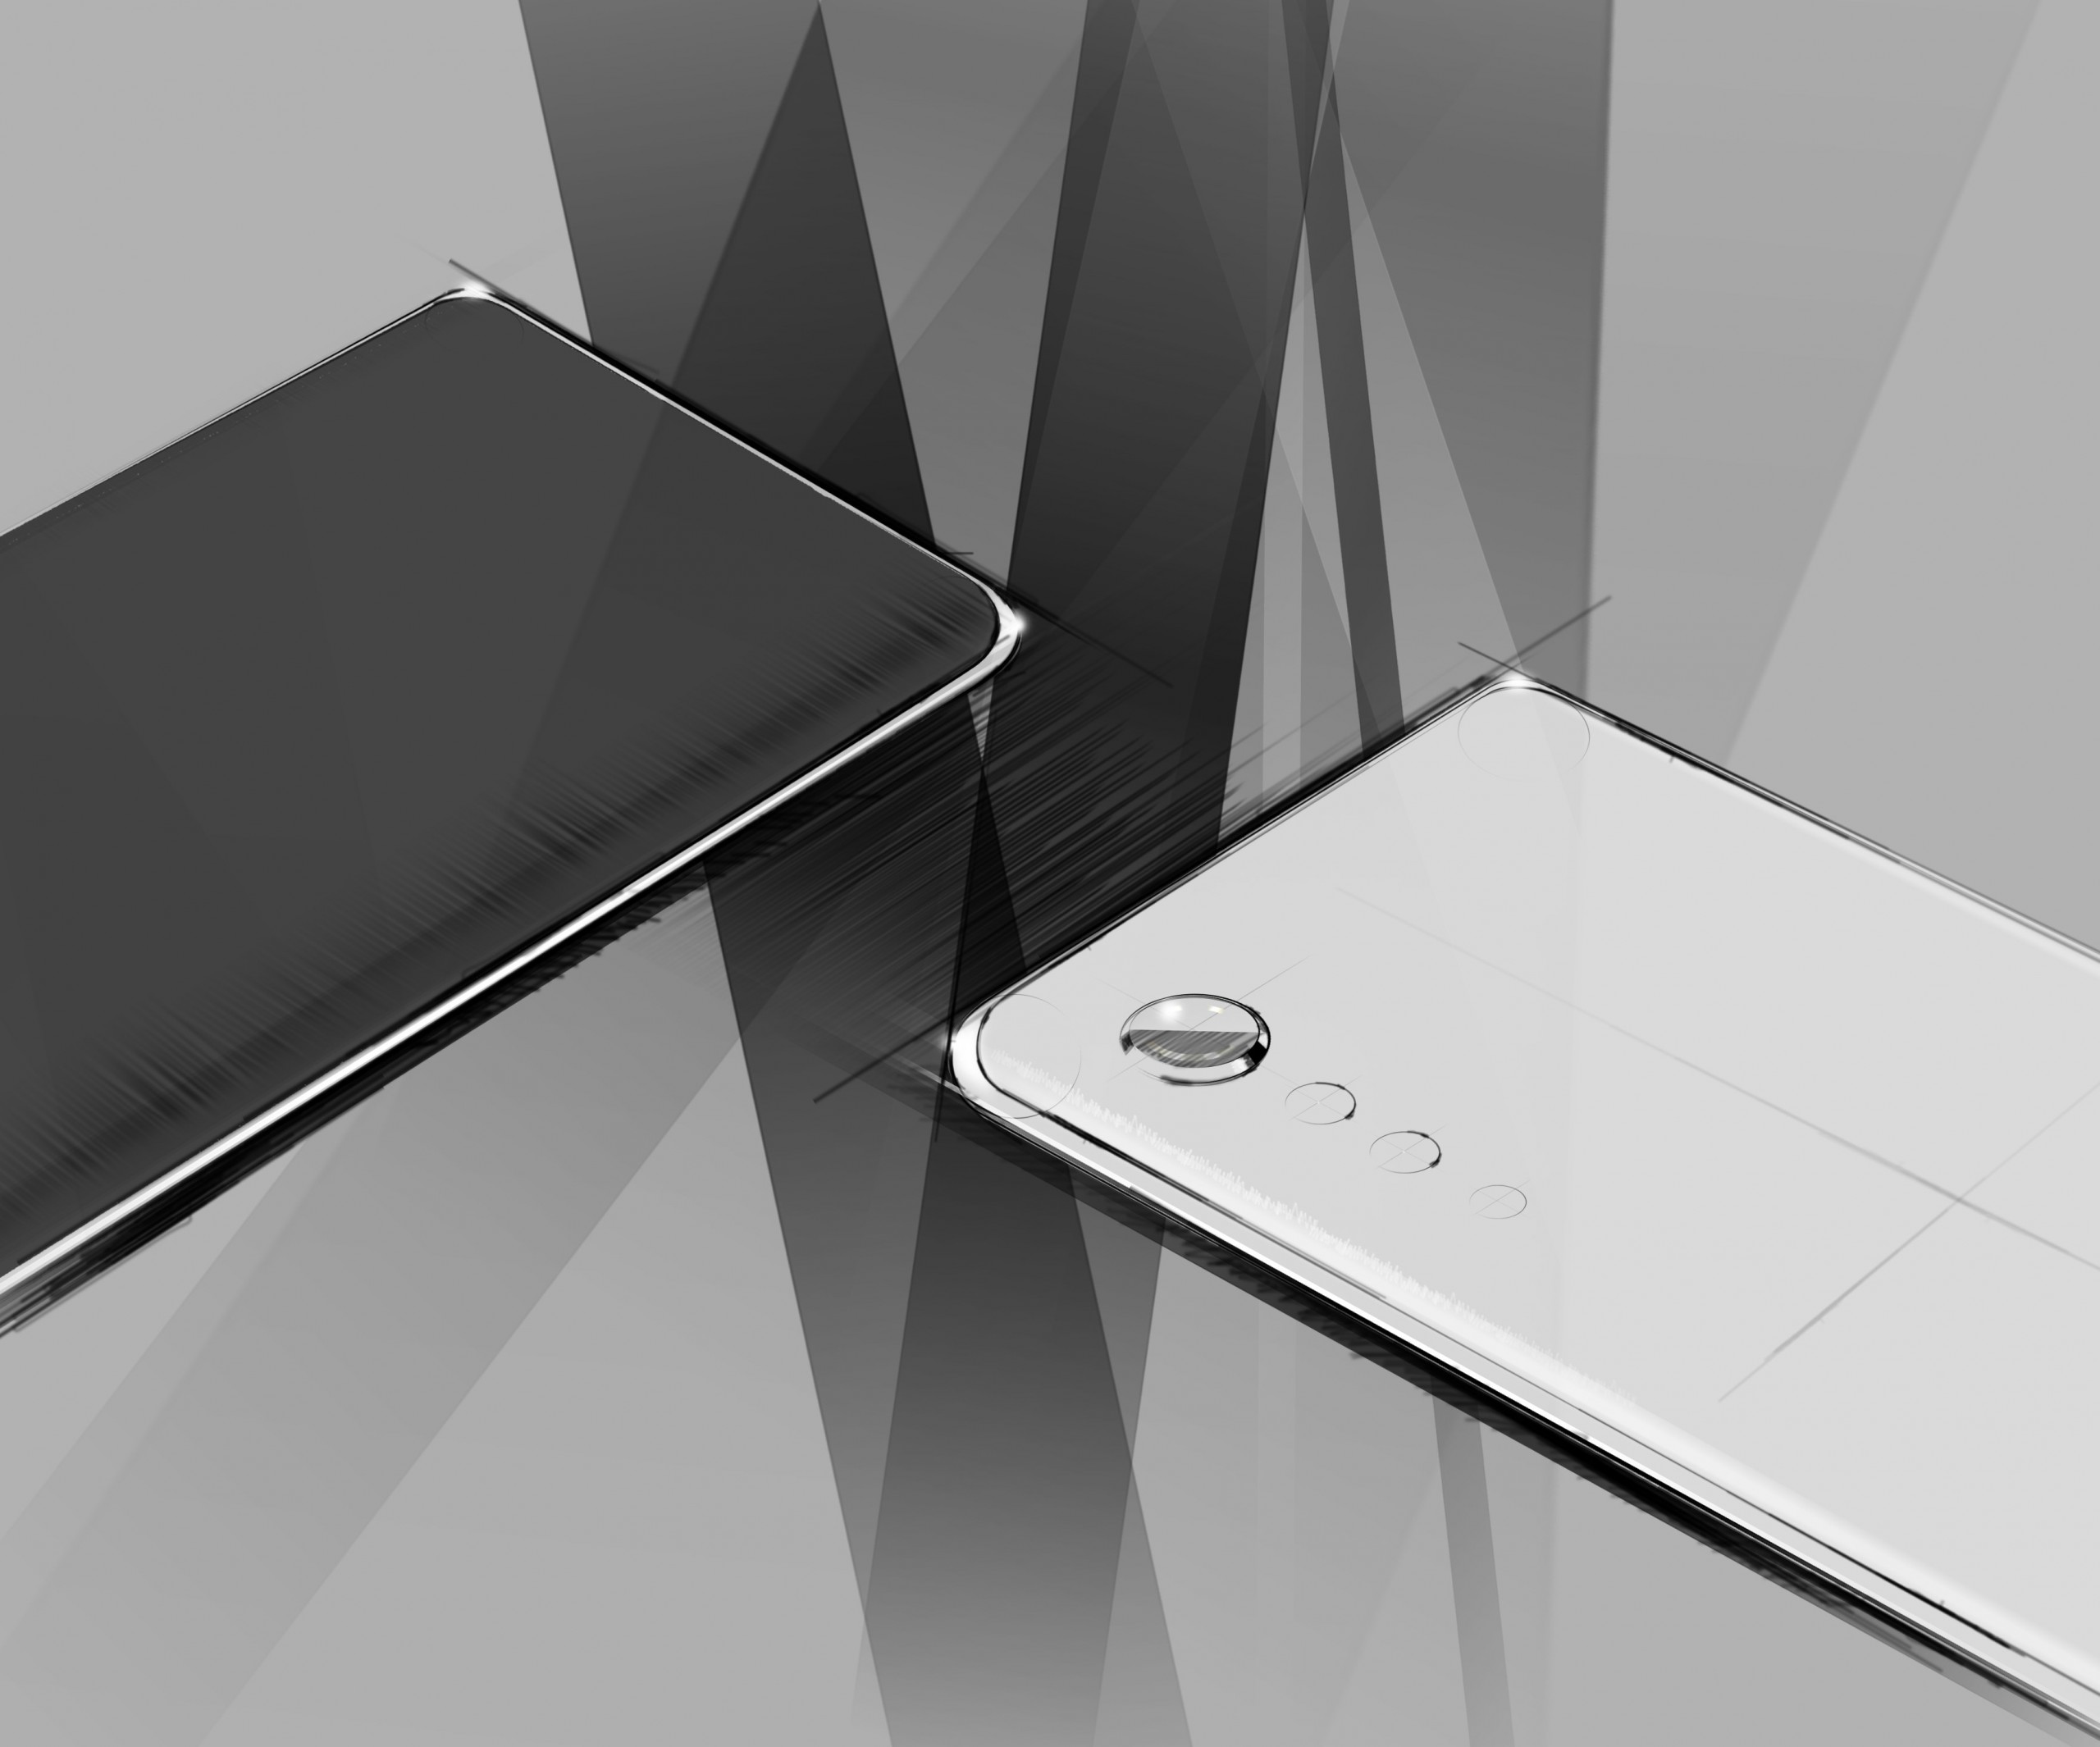 LG Velvet phone concept